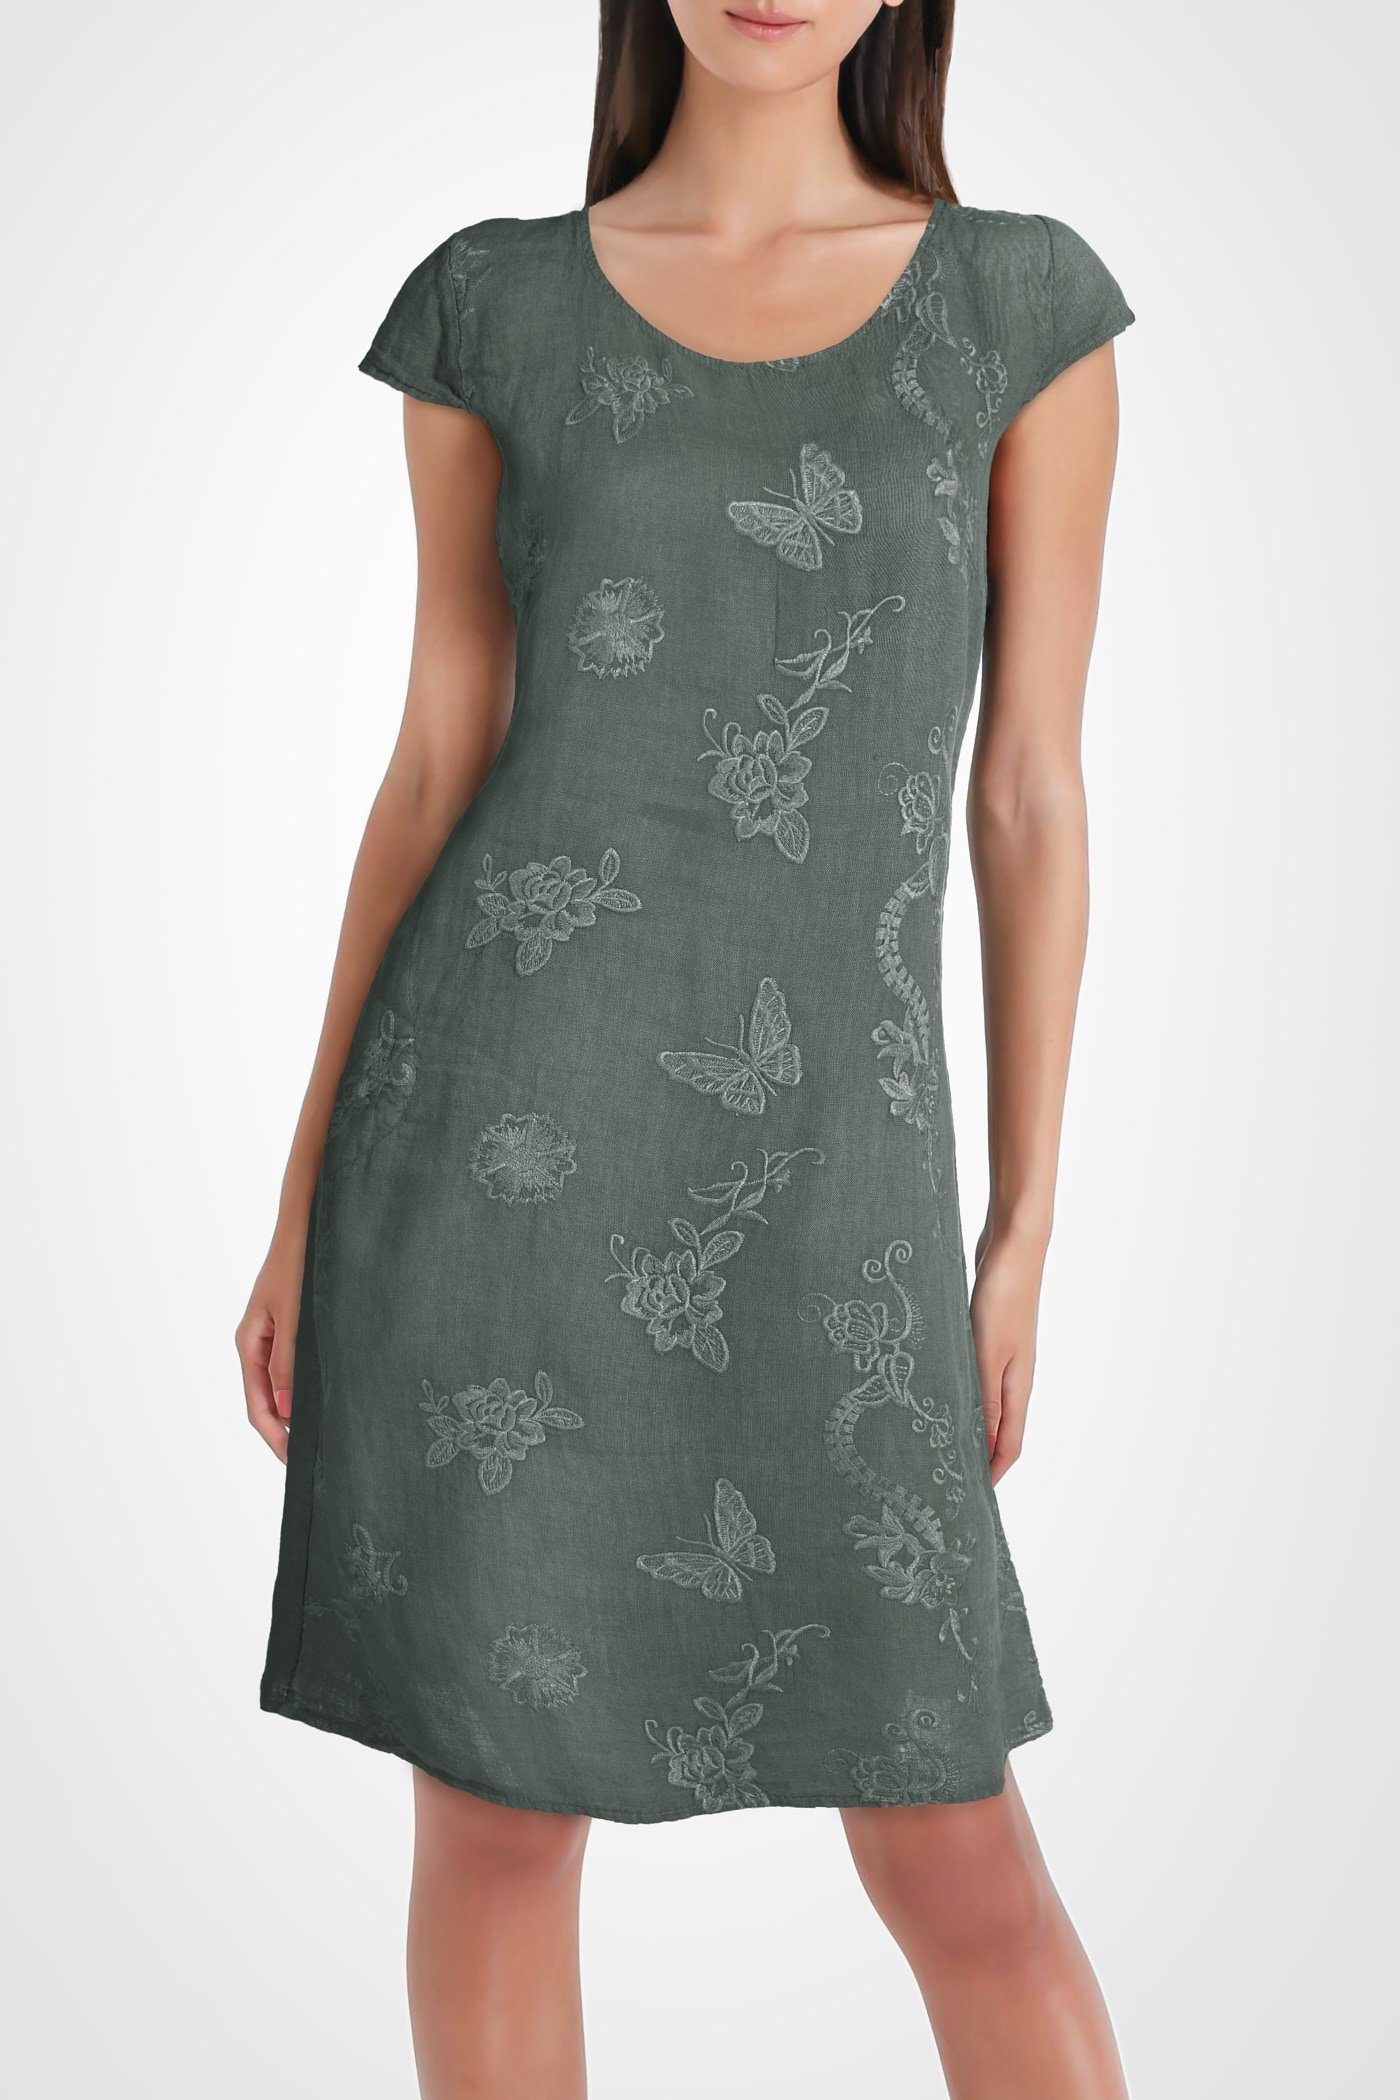 PEKIVESSA Sommerkleid »Leinenkleid Damen Sommer knielang« mit eleganten  Stickereien online kaufen | OTTO